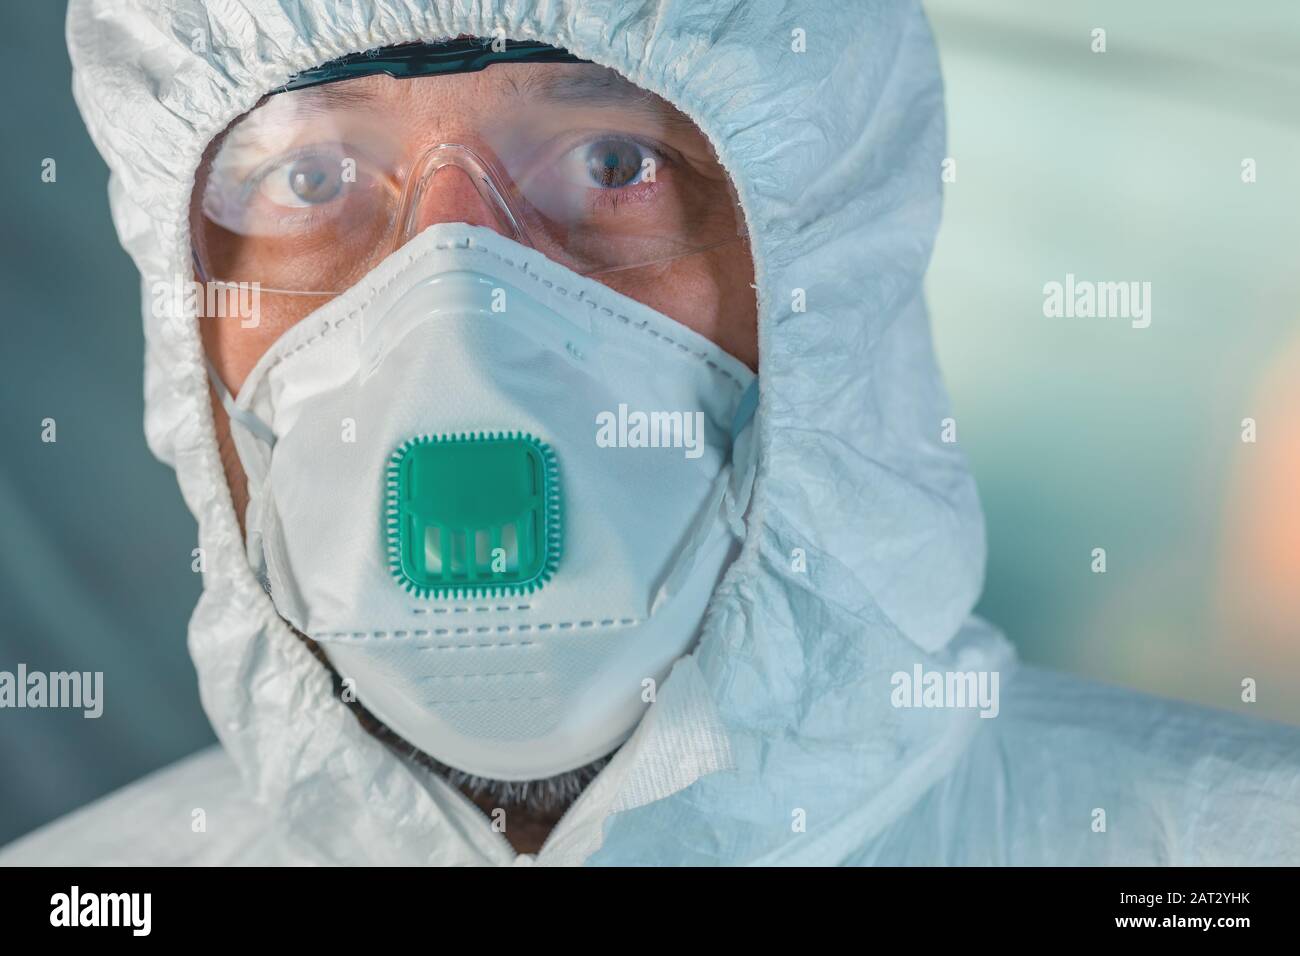 Ritratto di virologo maschile con maschera protettiva, occhiali di protezione e abbigliamento guardando la fotocamera, fuoco selettivo Foto Stock